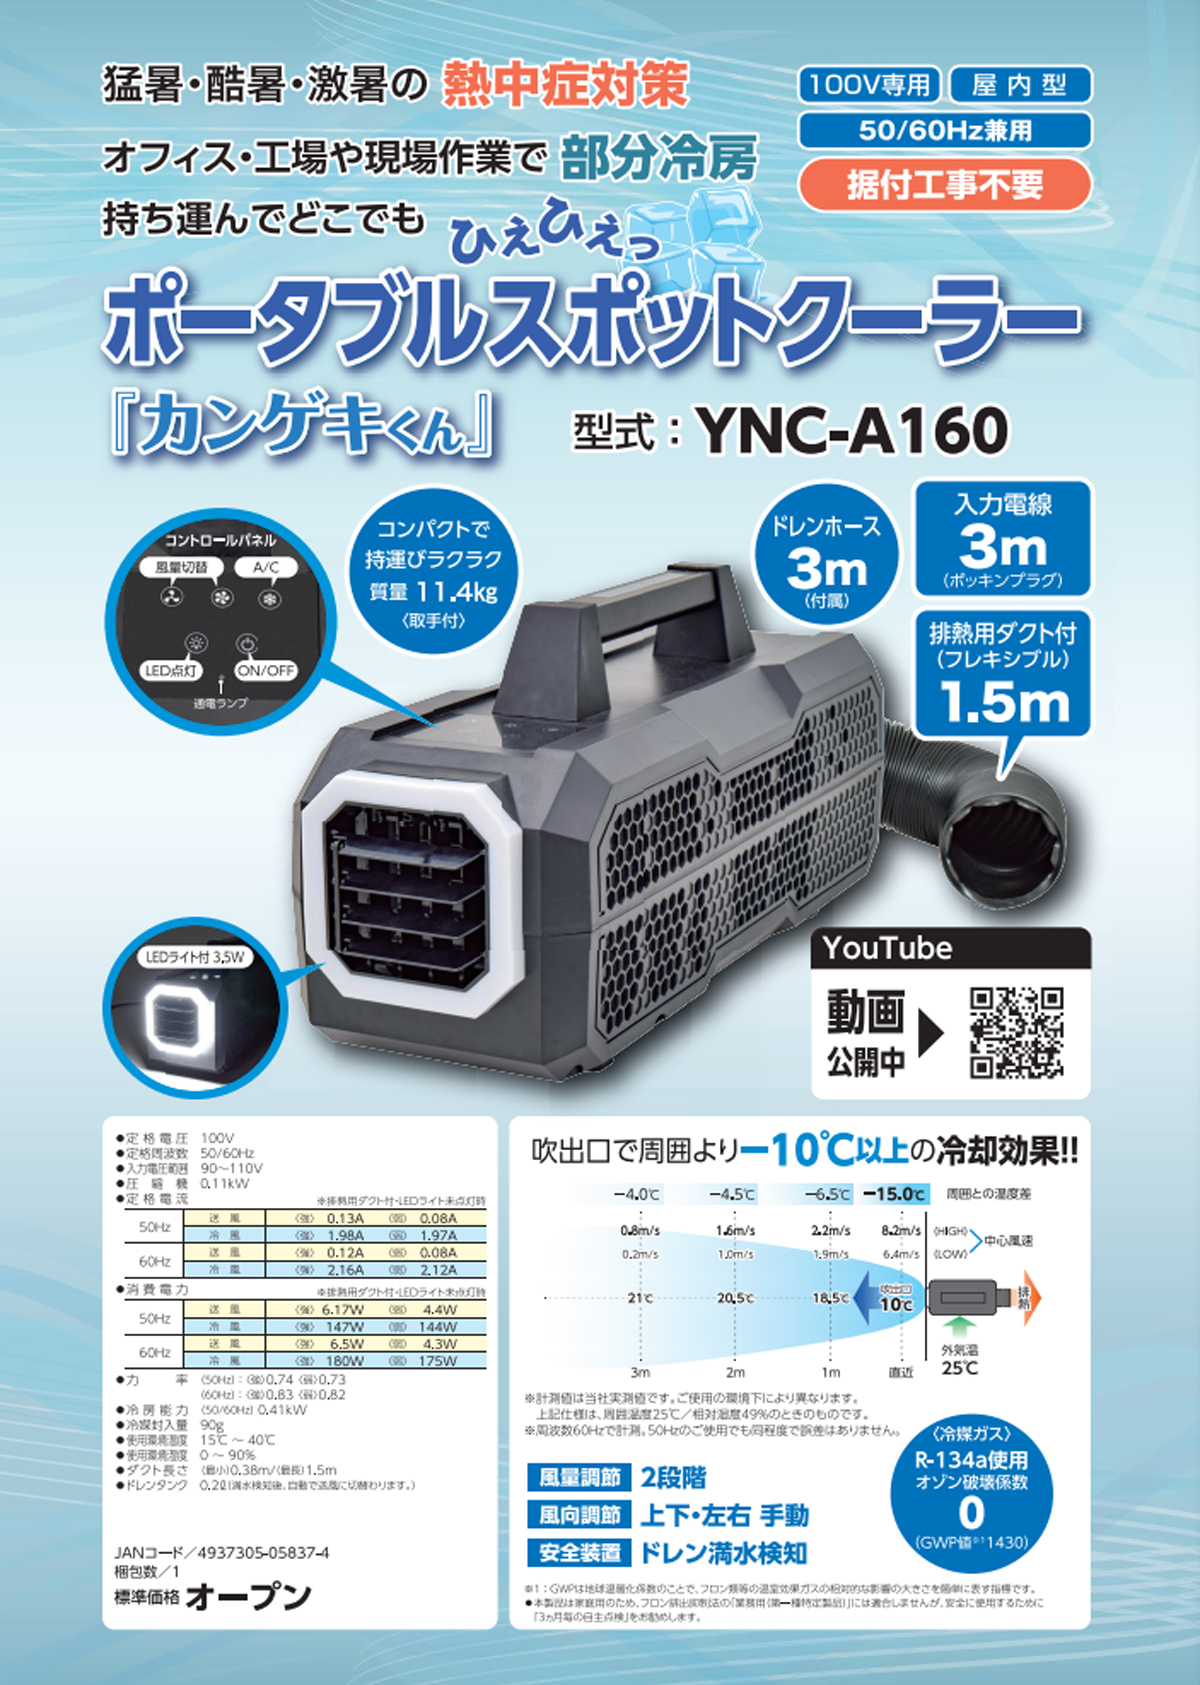 日動 YNC-A160 ポータブルスポットクーラー「カンゲキくん」 ウエダ金物【公式サイト】